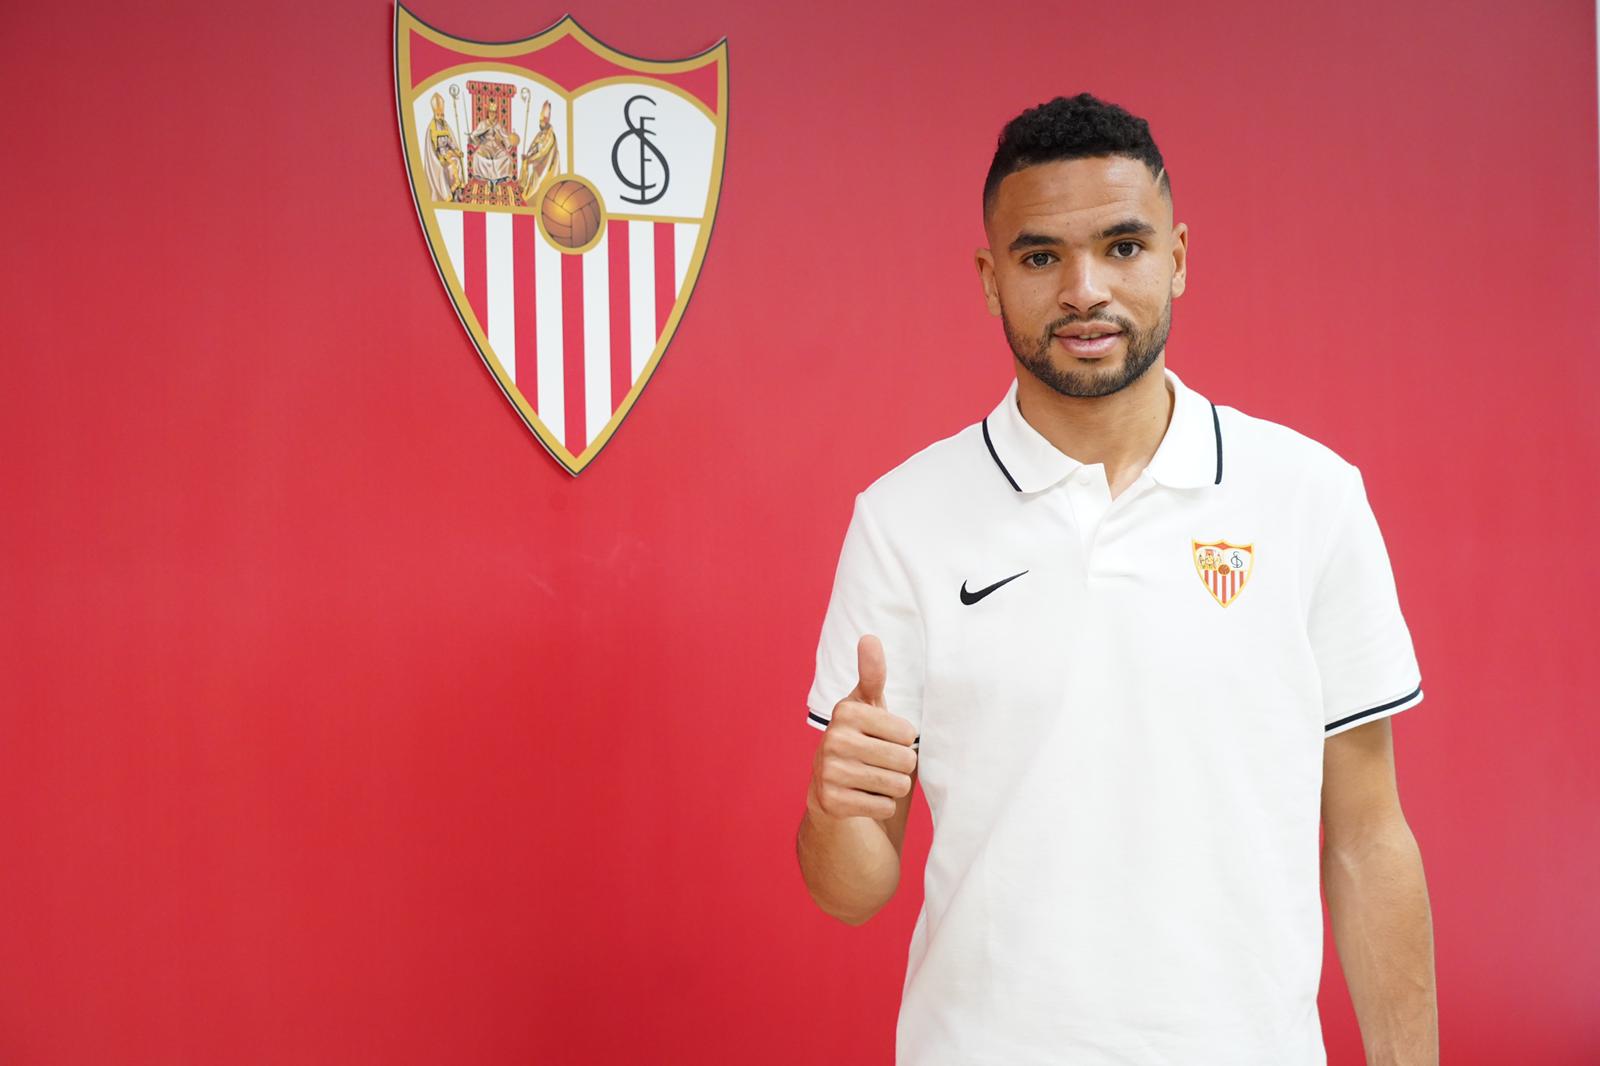 En-Nesyri, Sevilla FC's newest recruit